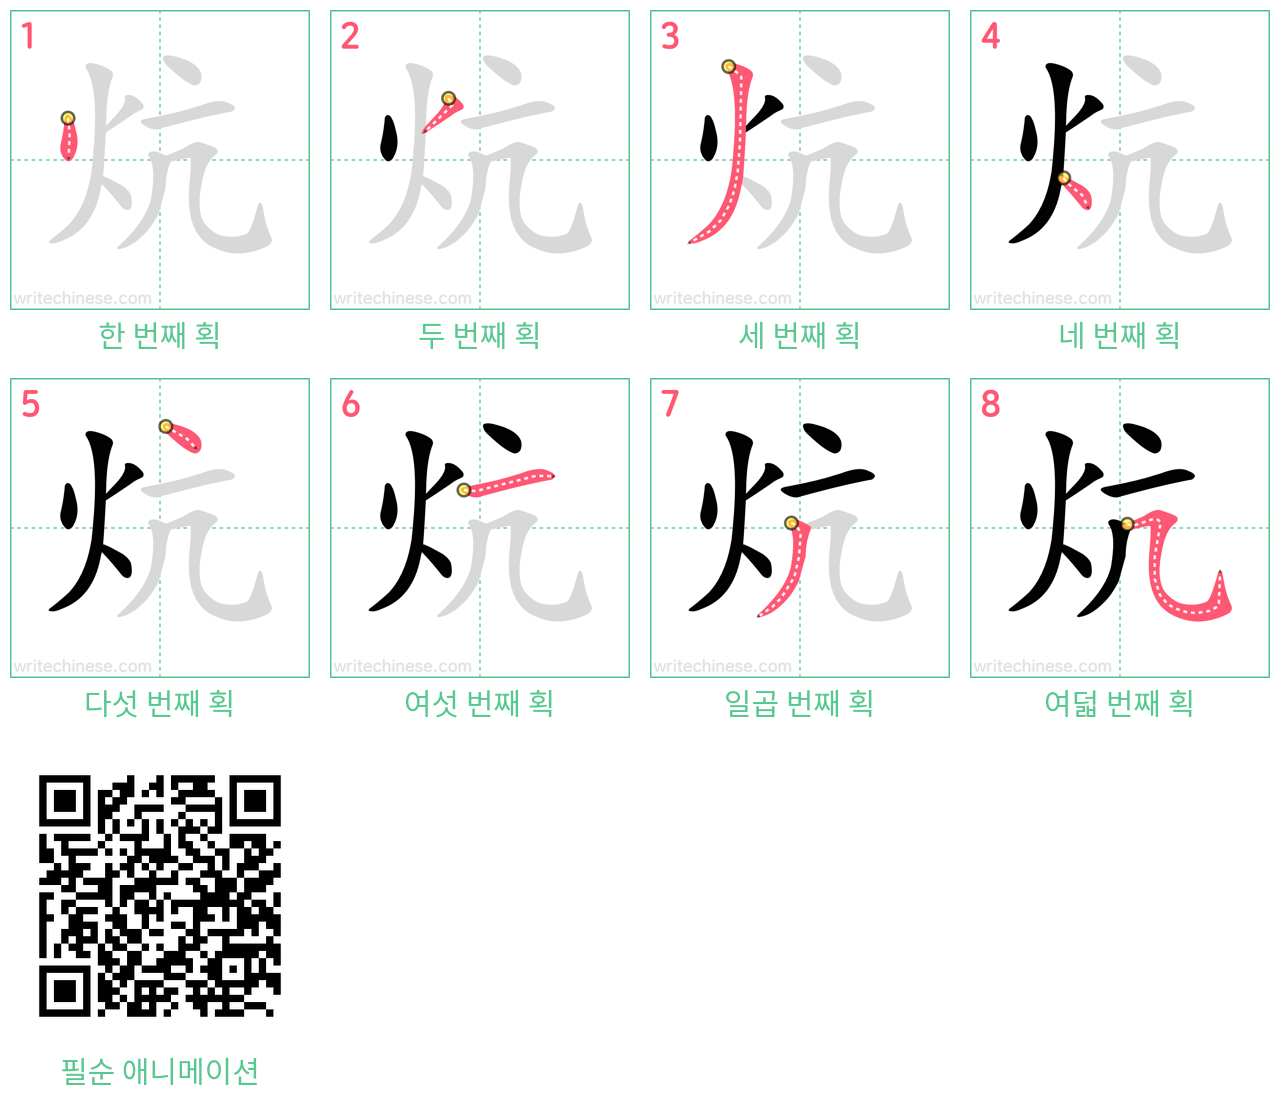 炕 step-by-step stroke order diagrams